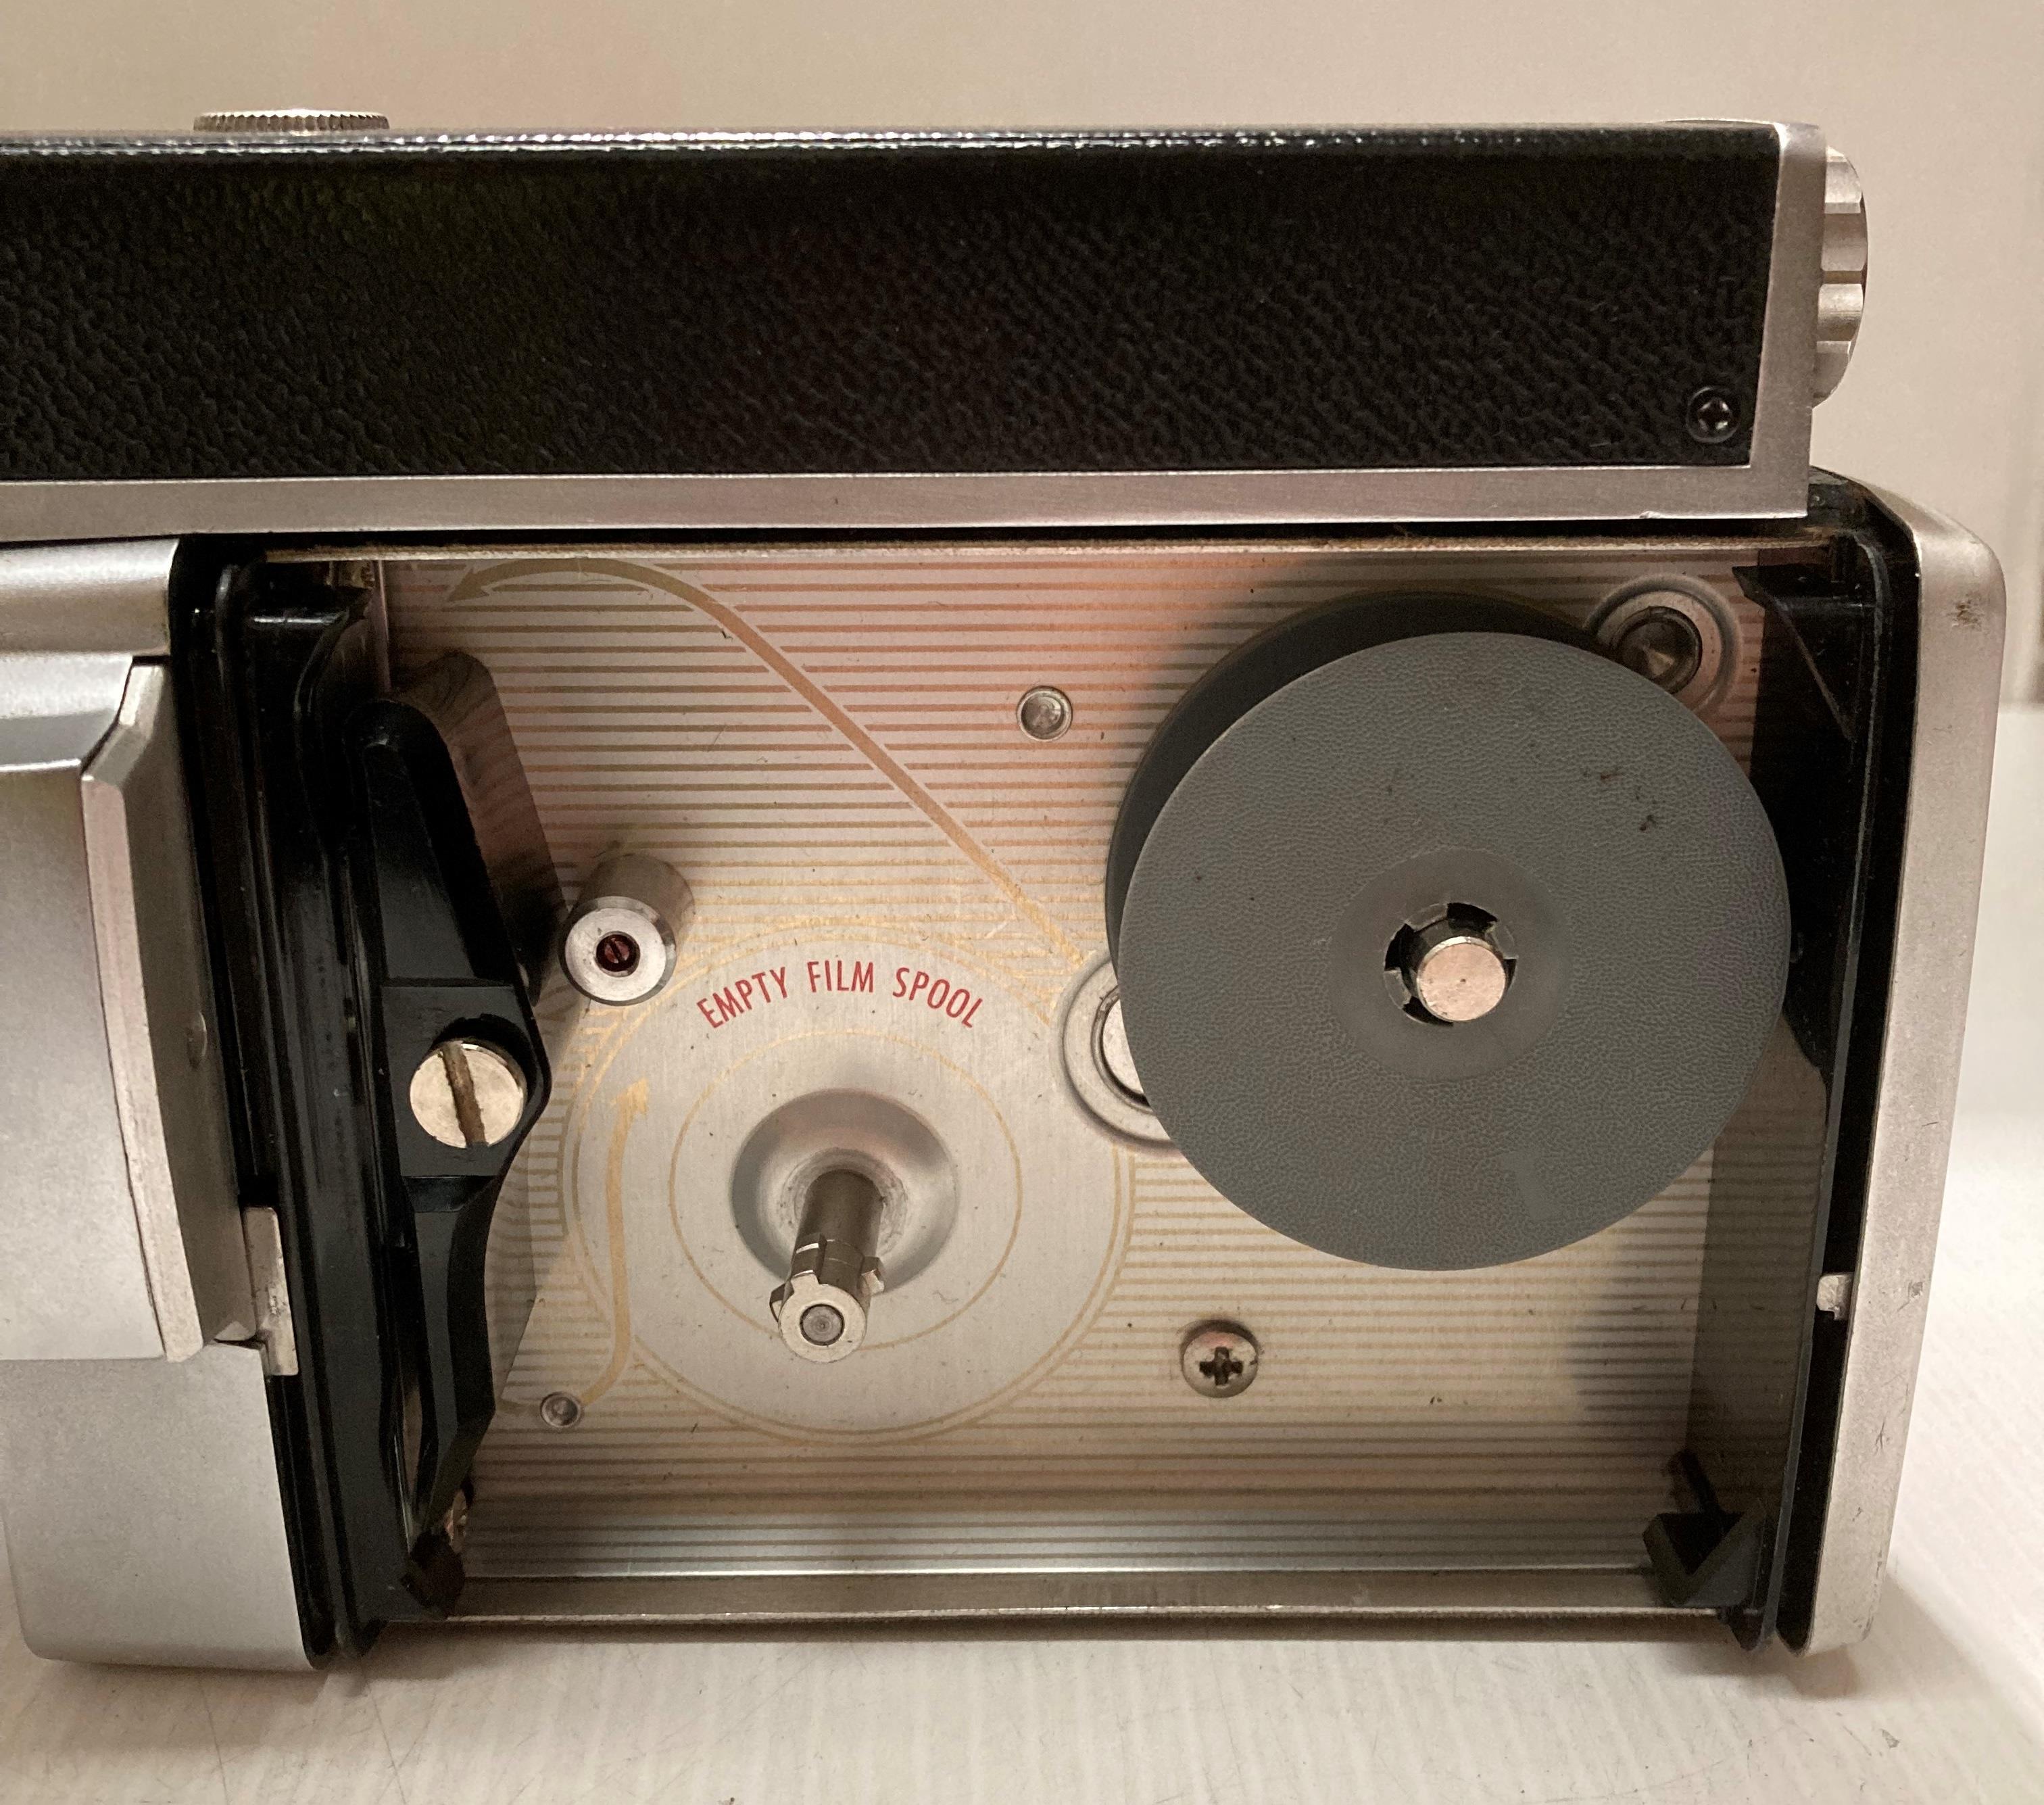 A Kodak Spool camera model 300m reflex F 1.6 in case, a 'Bolco' condenser lens and a Zorki 6 F 3. - Image 5 of 10